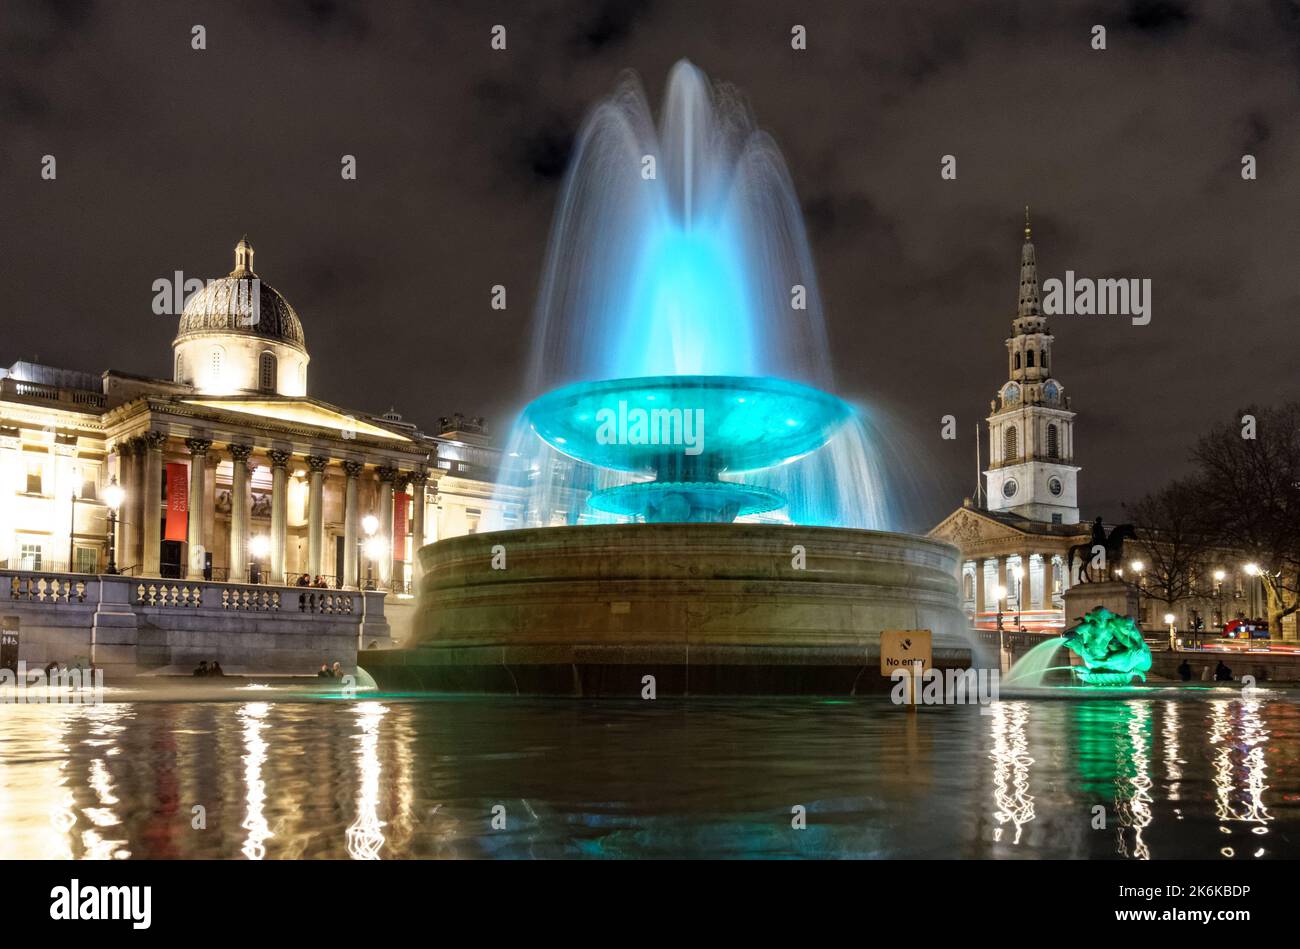 Beleuchteter Springbrunnen am Trafalgar Square bei Nacht, London England Großbritannien Stockfoto